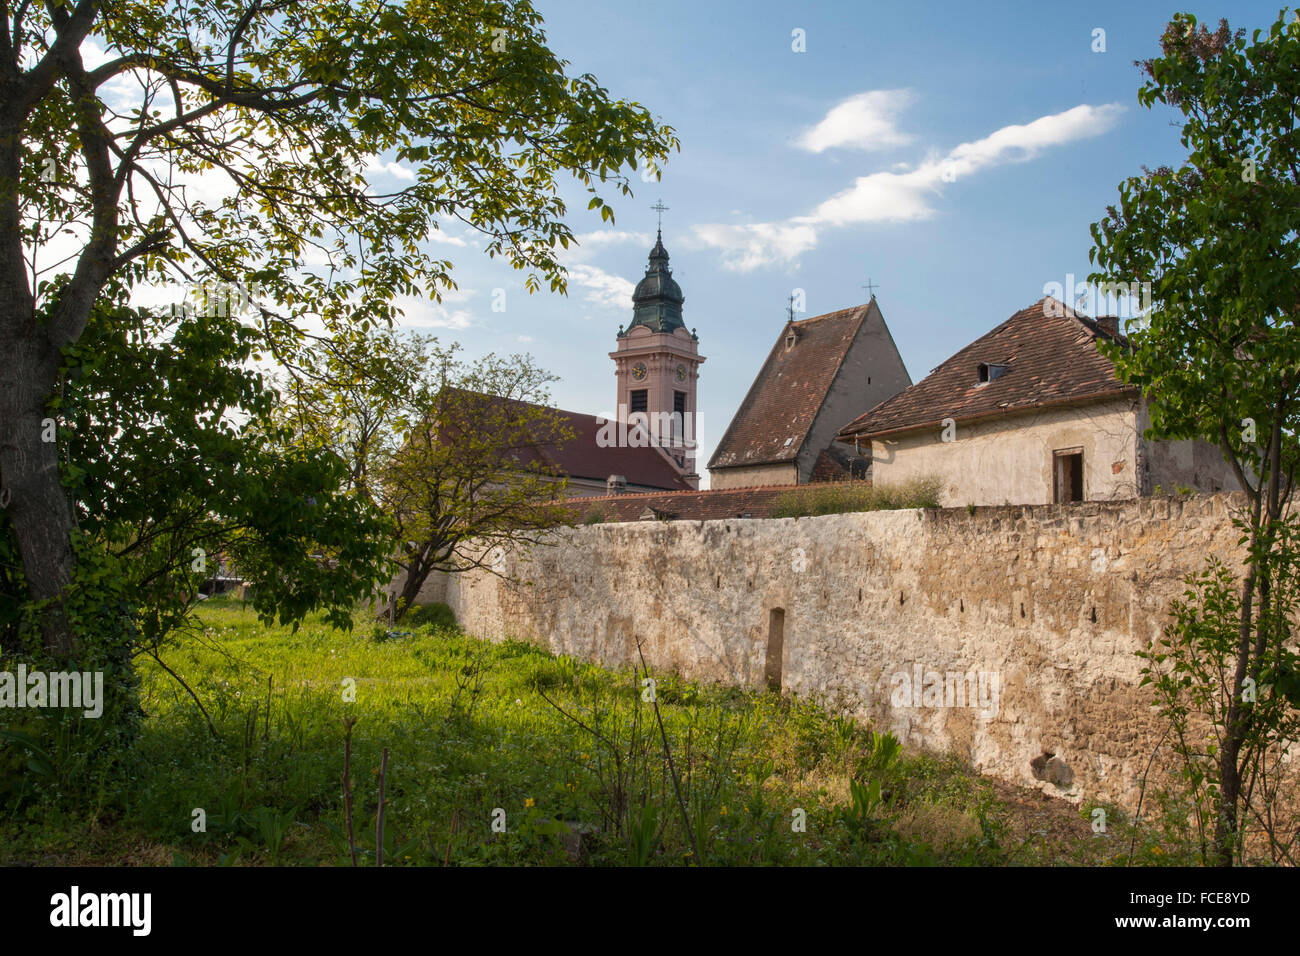 Kirche, Rost, UNESCO World Heritage Site die Kulturlandschaft Neusiedler See Neusiedlersee, Burgenland, Österreich Stockfoto